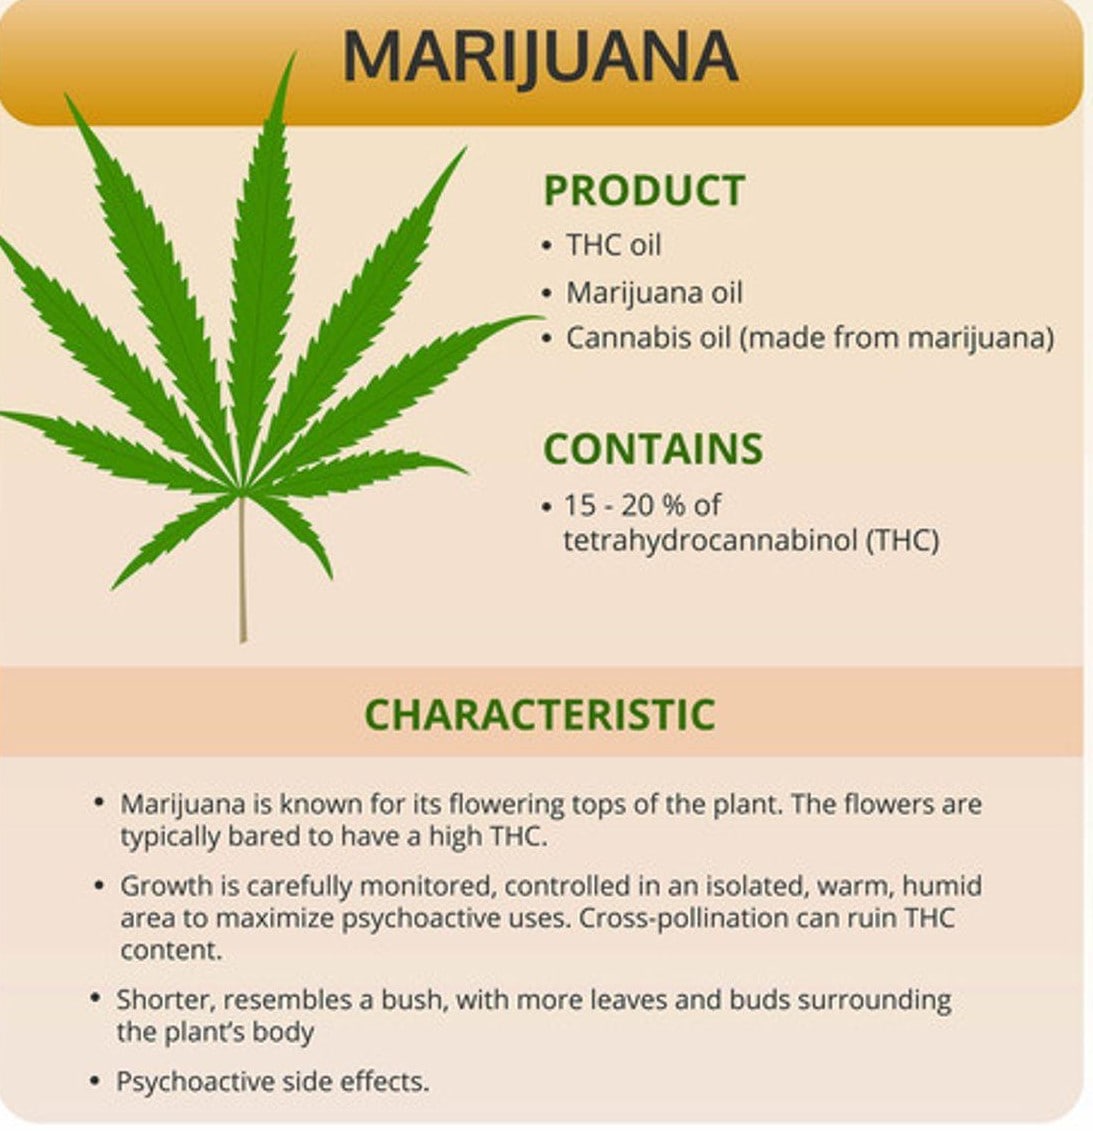 Information on Marijuana